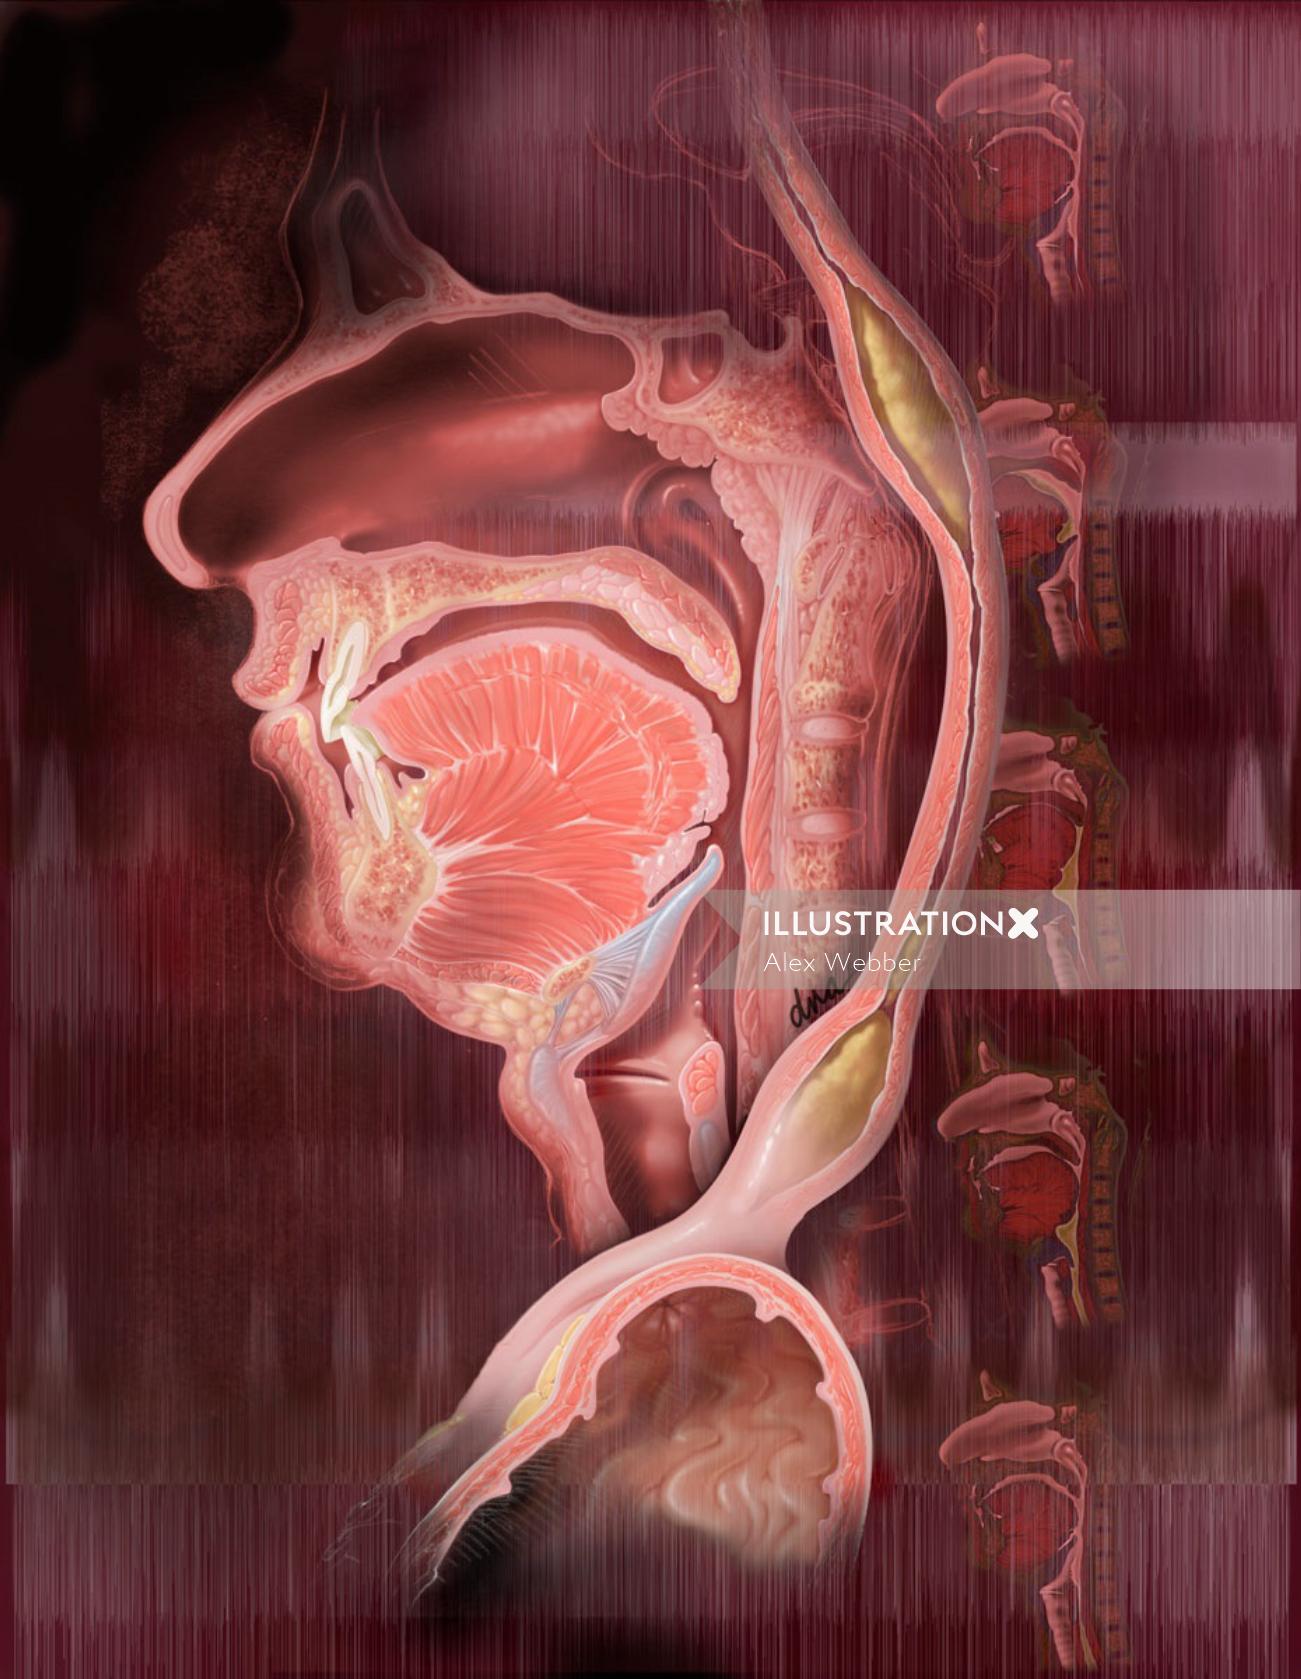 Illustration de la dysphagie et de la déglutition par AlexBaker